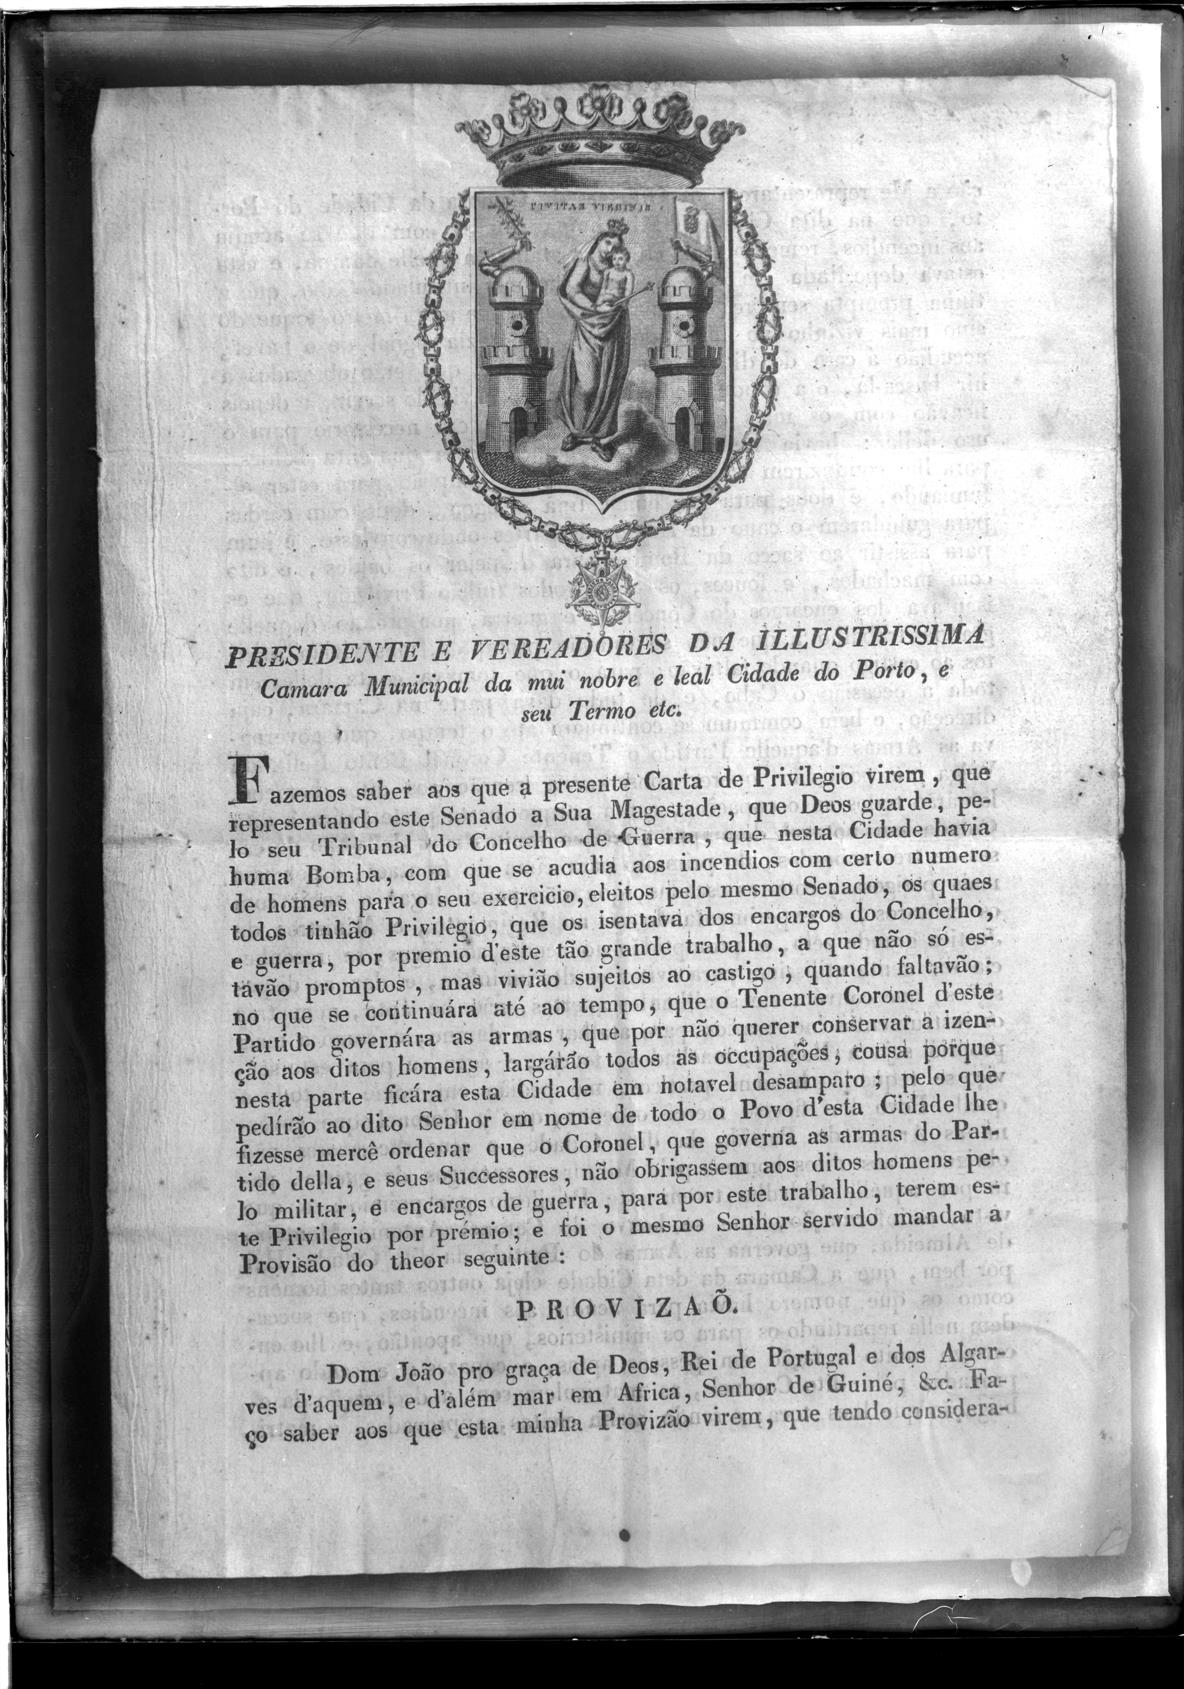 [Carta de provisão de D. João VI dirigida ao presidente e vereadores da Câmara Municipal do Porto]